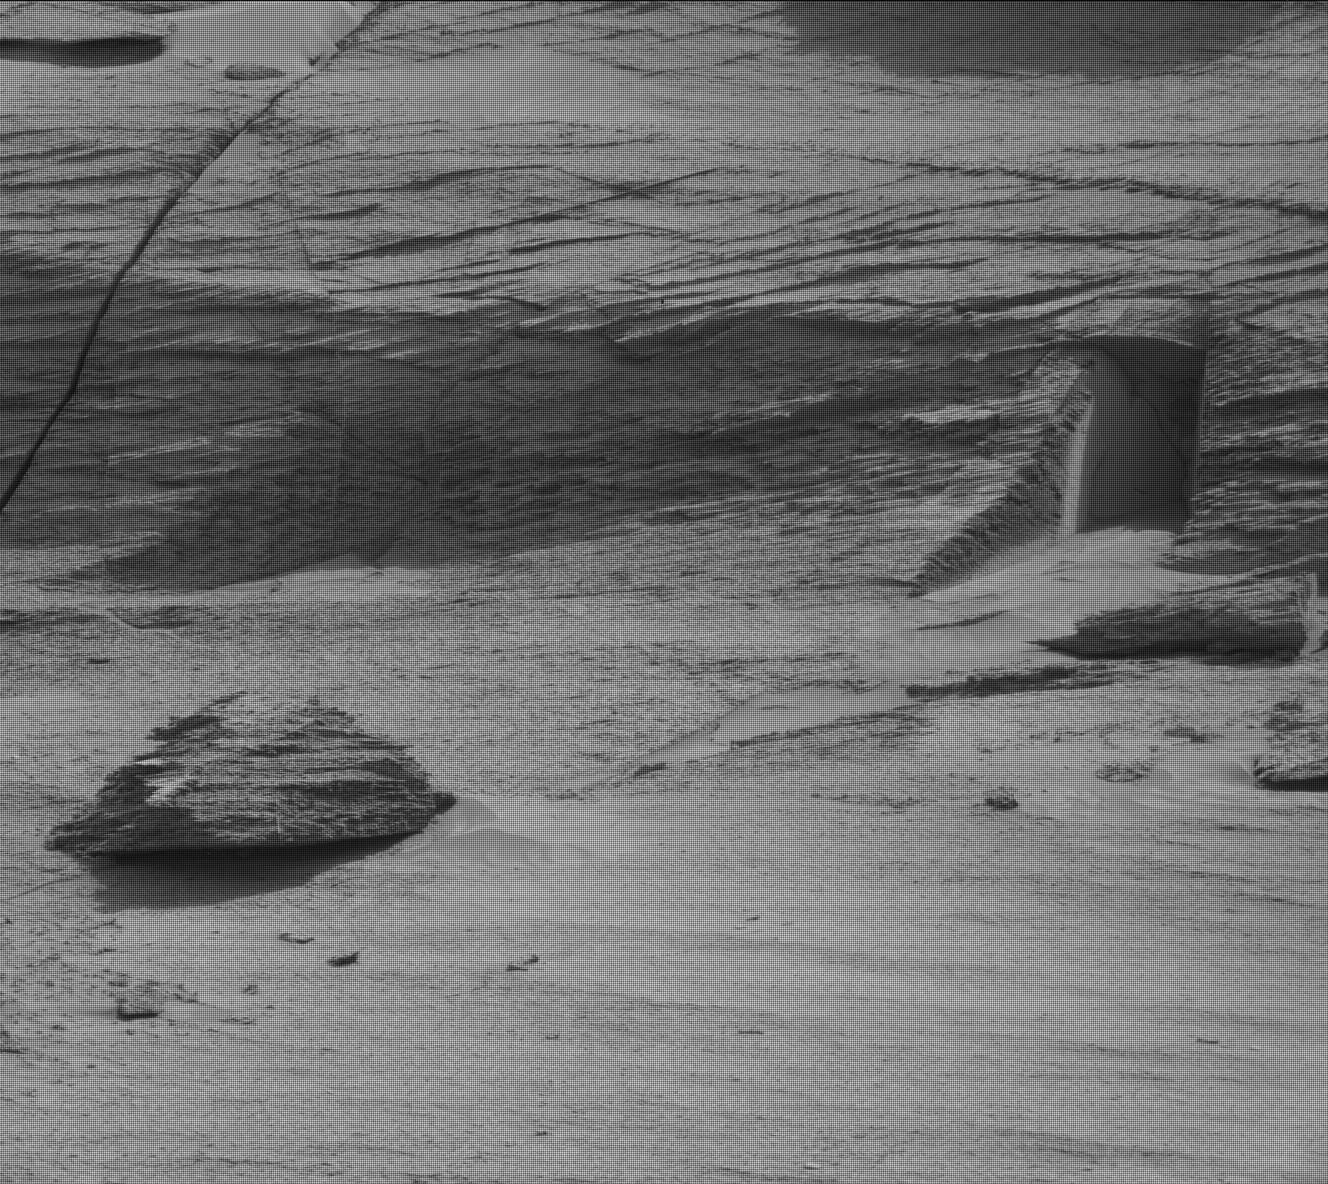 Imagen capturada por la NASA el día solar 3466 del rover Curiosity, correspondiente a la 